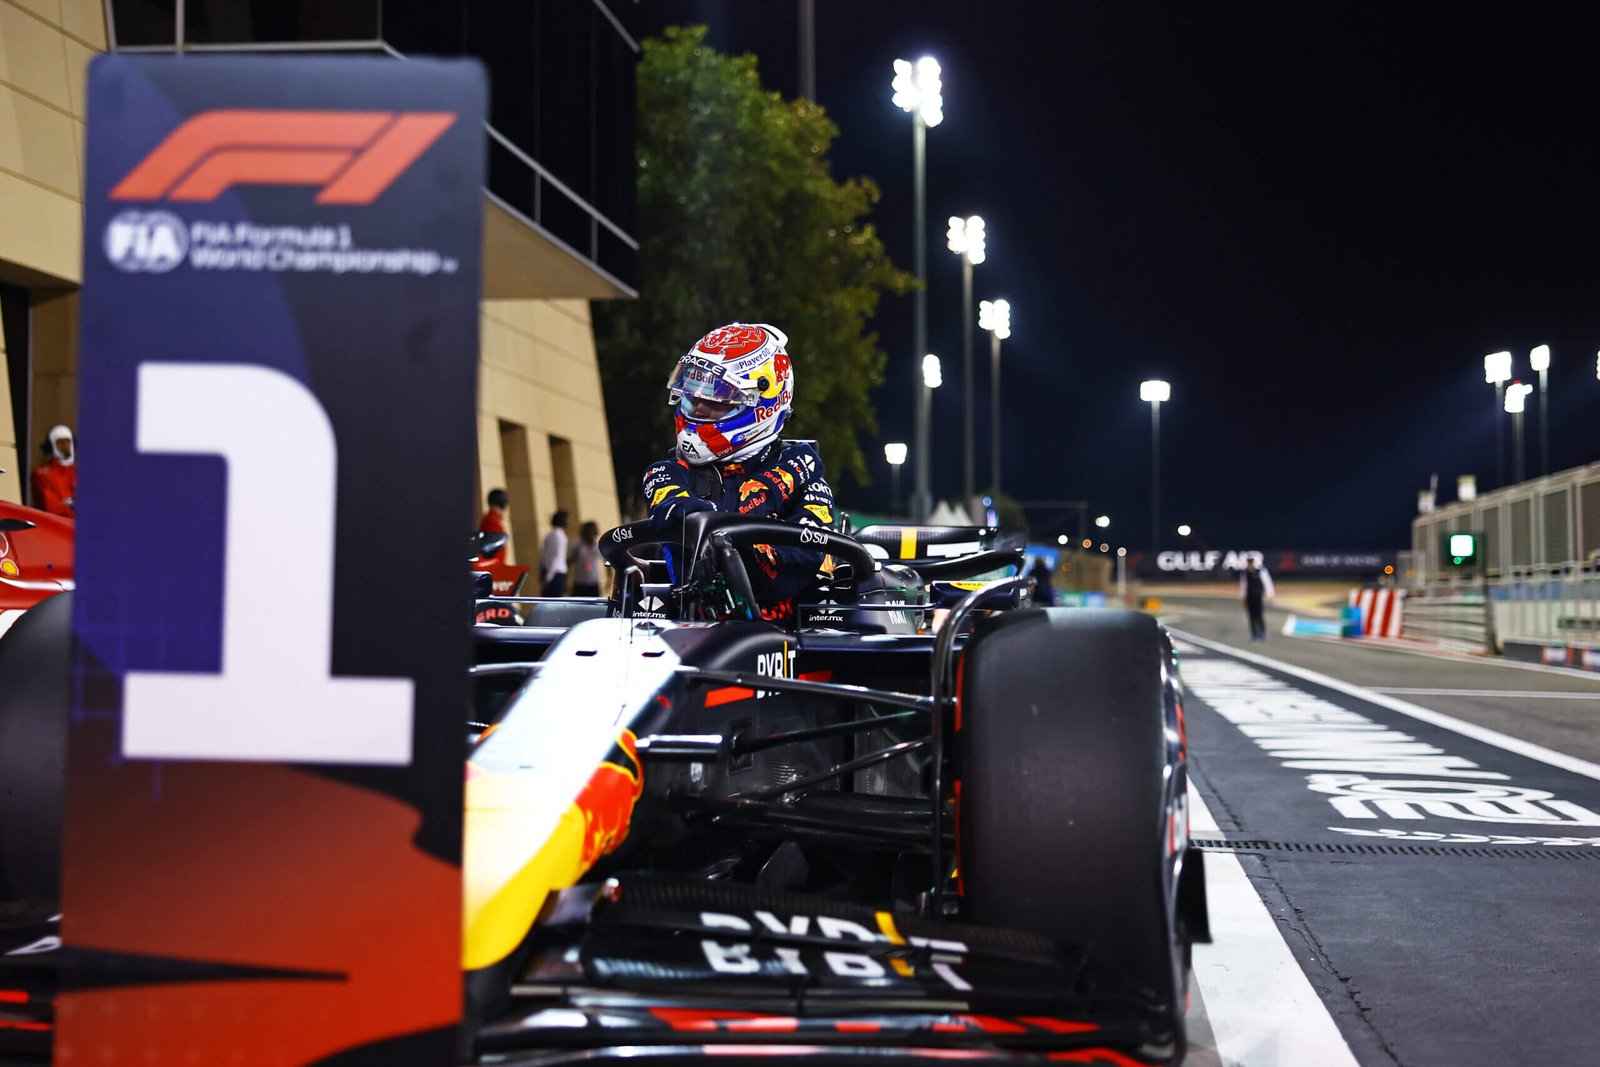 GP do Bahrein – Primeira classificação do ano revela pontos importantes do grid